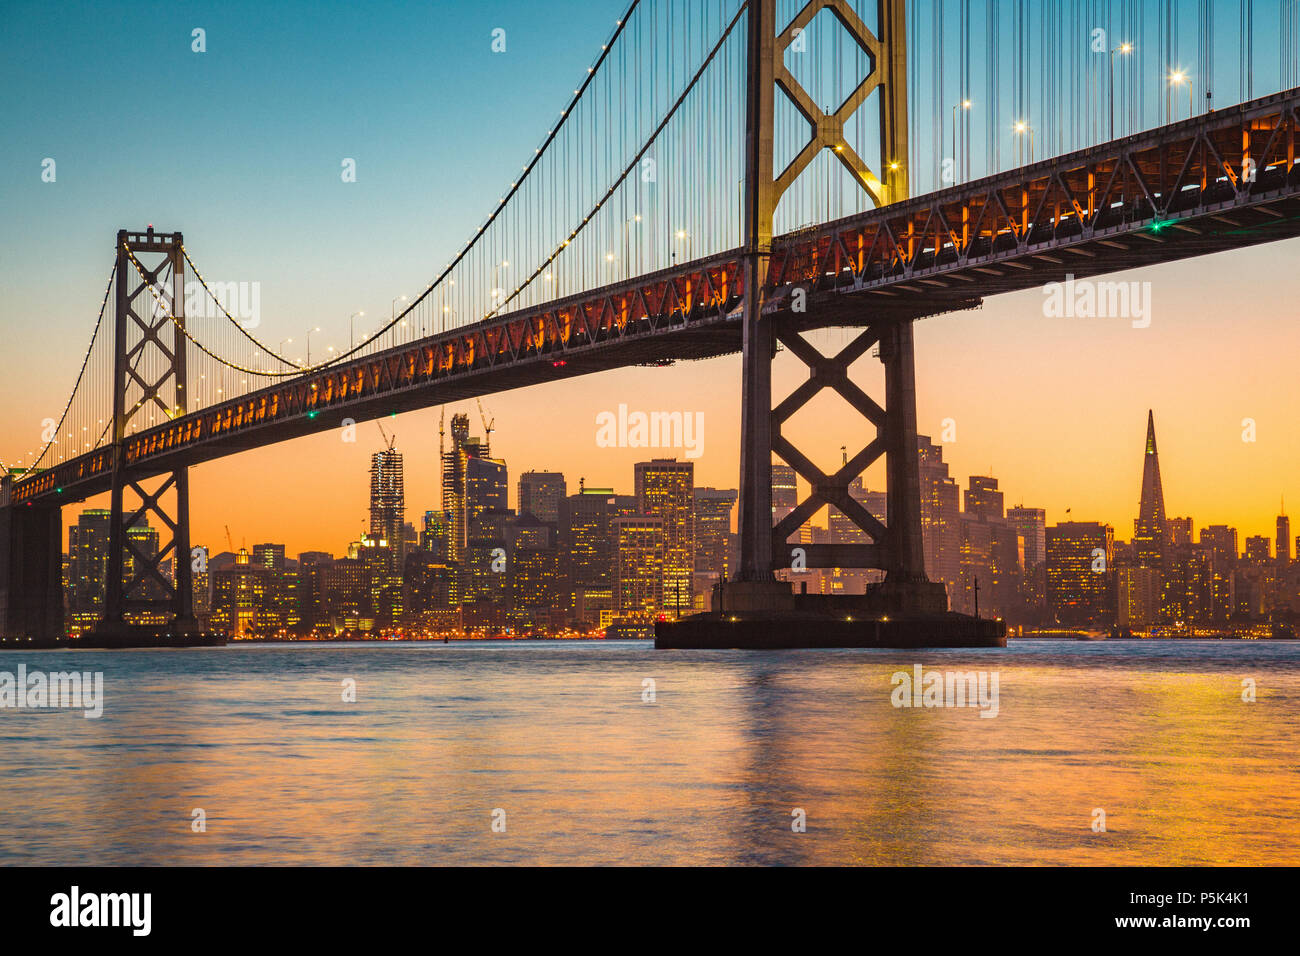 Classic vue panoramique de San Francisco skyline avec célèbre Oakland Bay Bridge illuminée en magnifique lumière du soir au coucher du soleil en été Banque D'Images